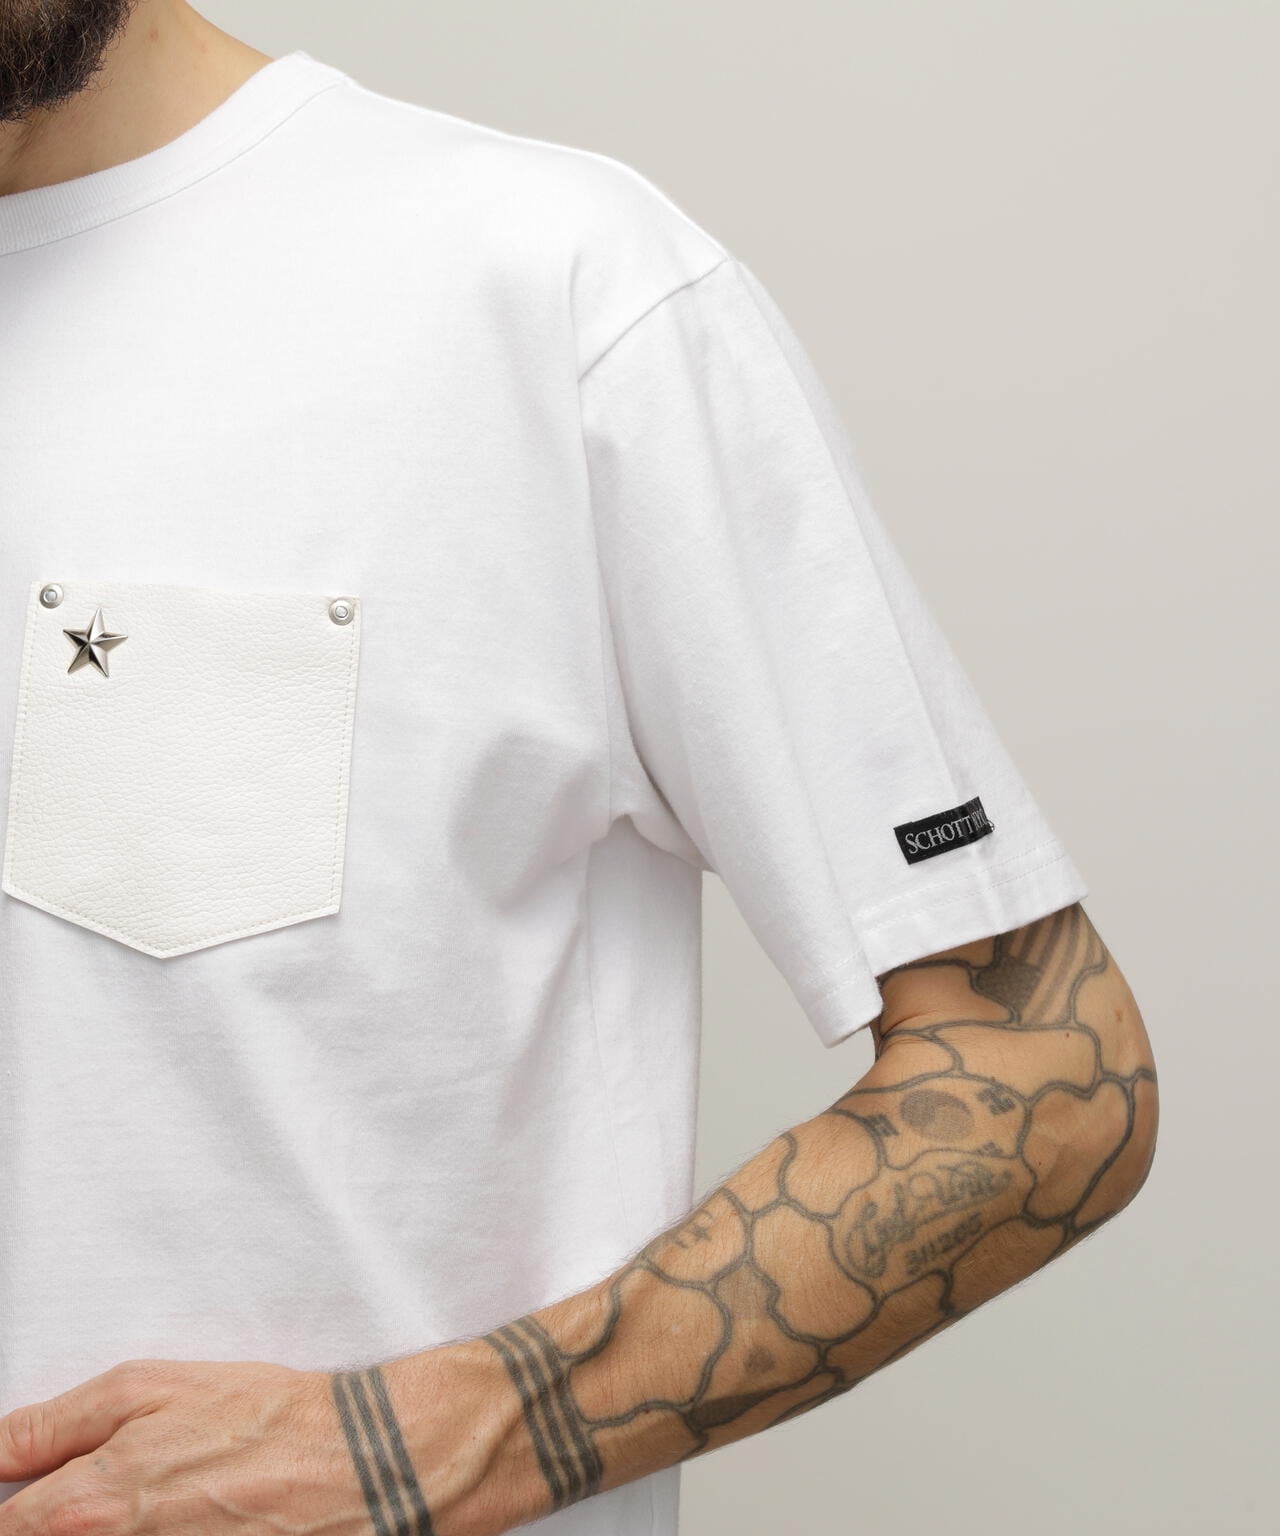 ONESTAR LEATHER POCKET T-SHIRT/ワンスターレザーポケット Tシャツ ...